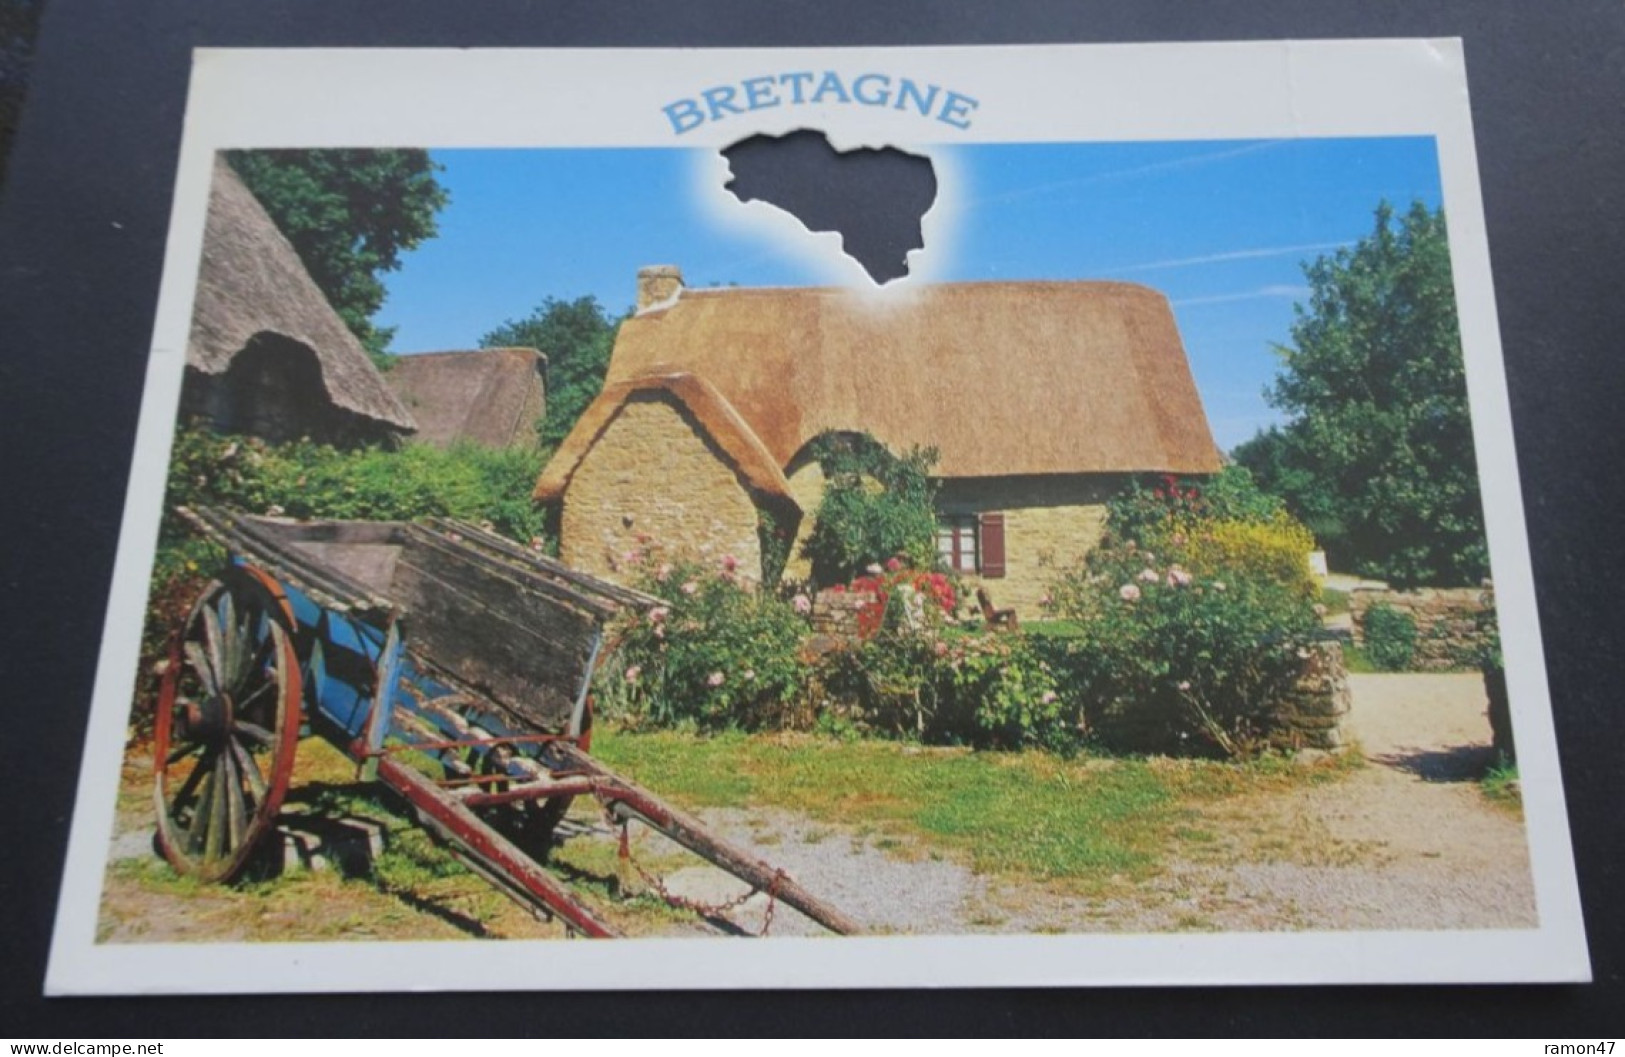 Bretagne - Silhouettes De Bretagne - Atmosphère Du Temps Jadis - Editions JOS Le Doaré, Châteaulin - Bretagne